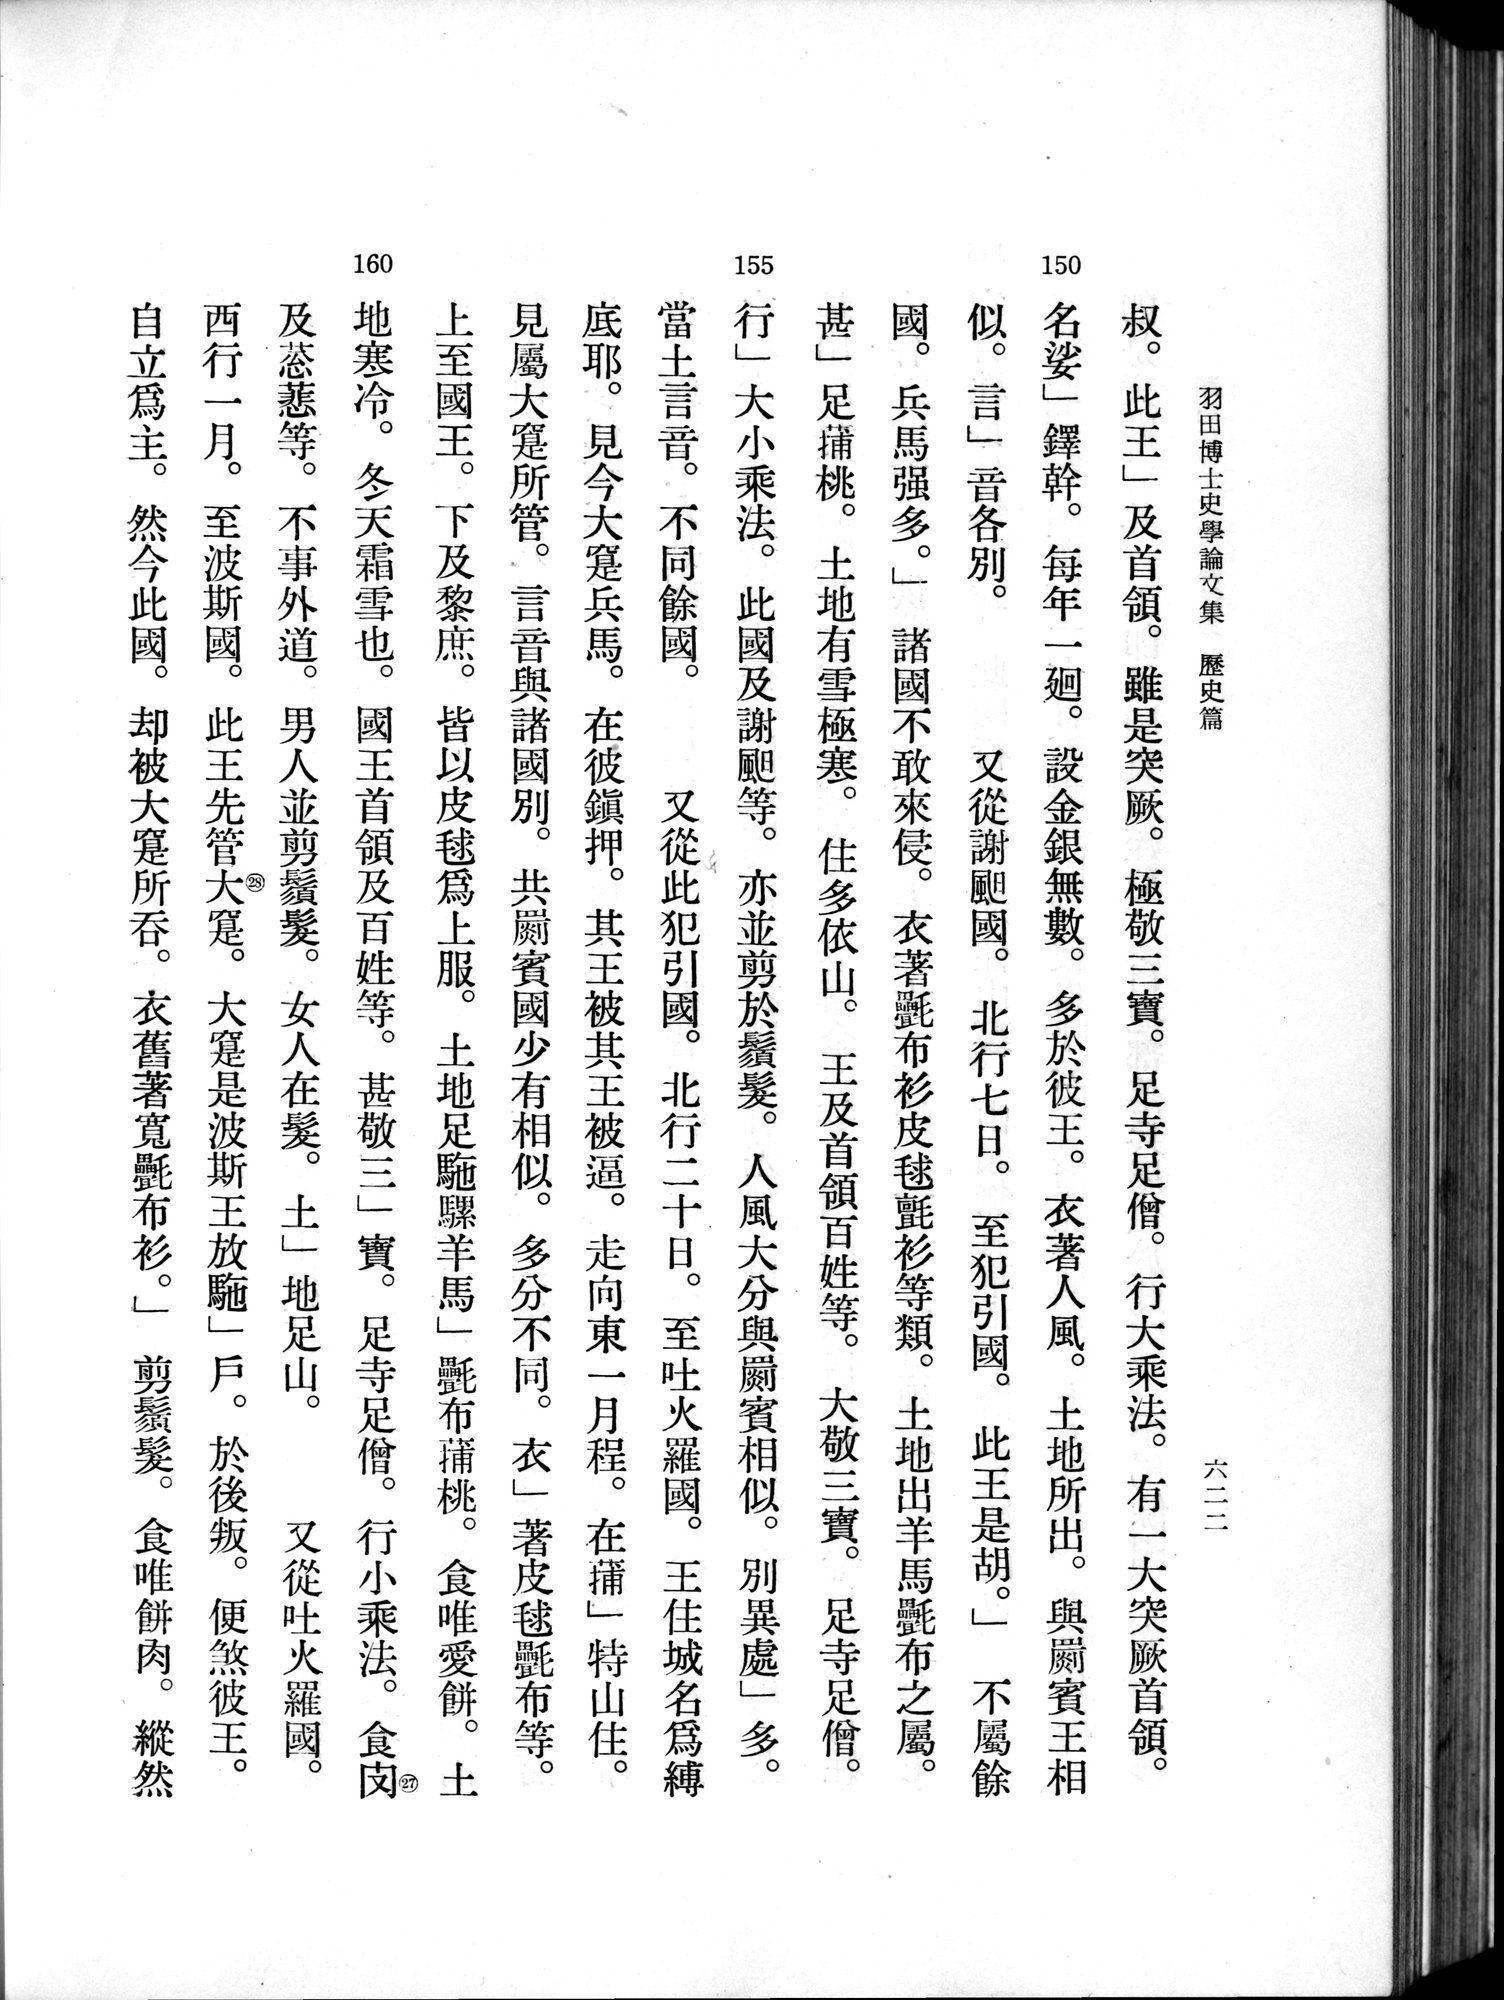 羽田博士史学論文集 : vol.1 / 660 ページ（白黒高解像度画像）